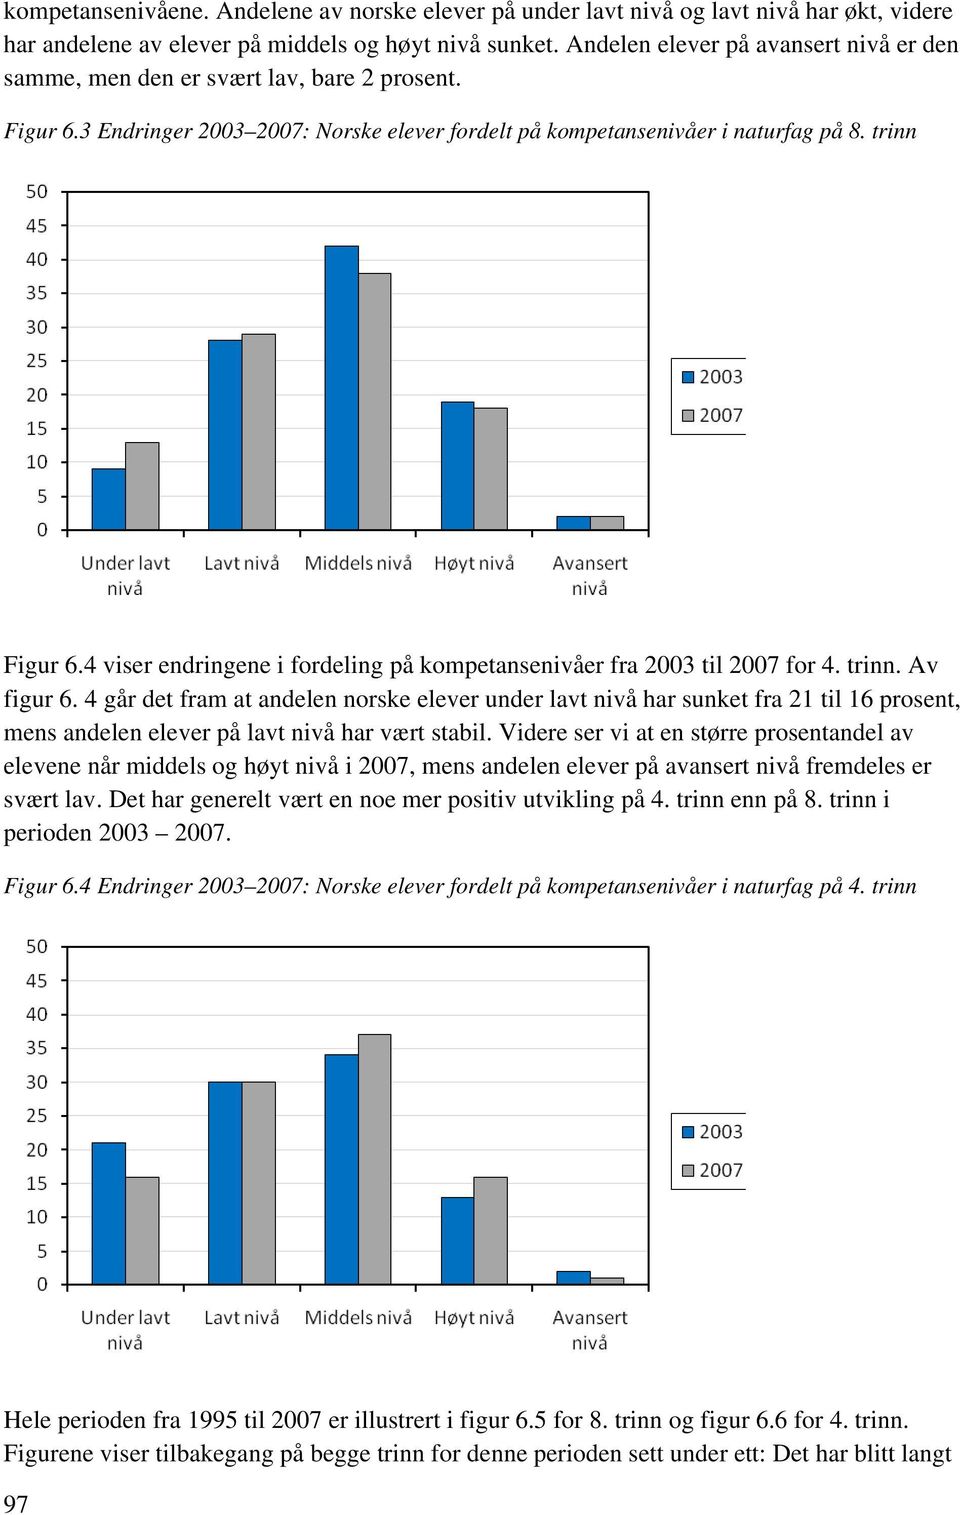 4 viser endringene i fordeling på kompetansenivåer fra 2003 til 2007 for 4. trinn. Av figur 6.